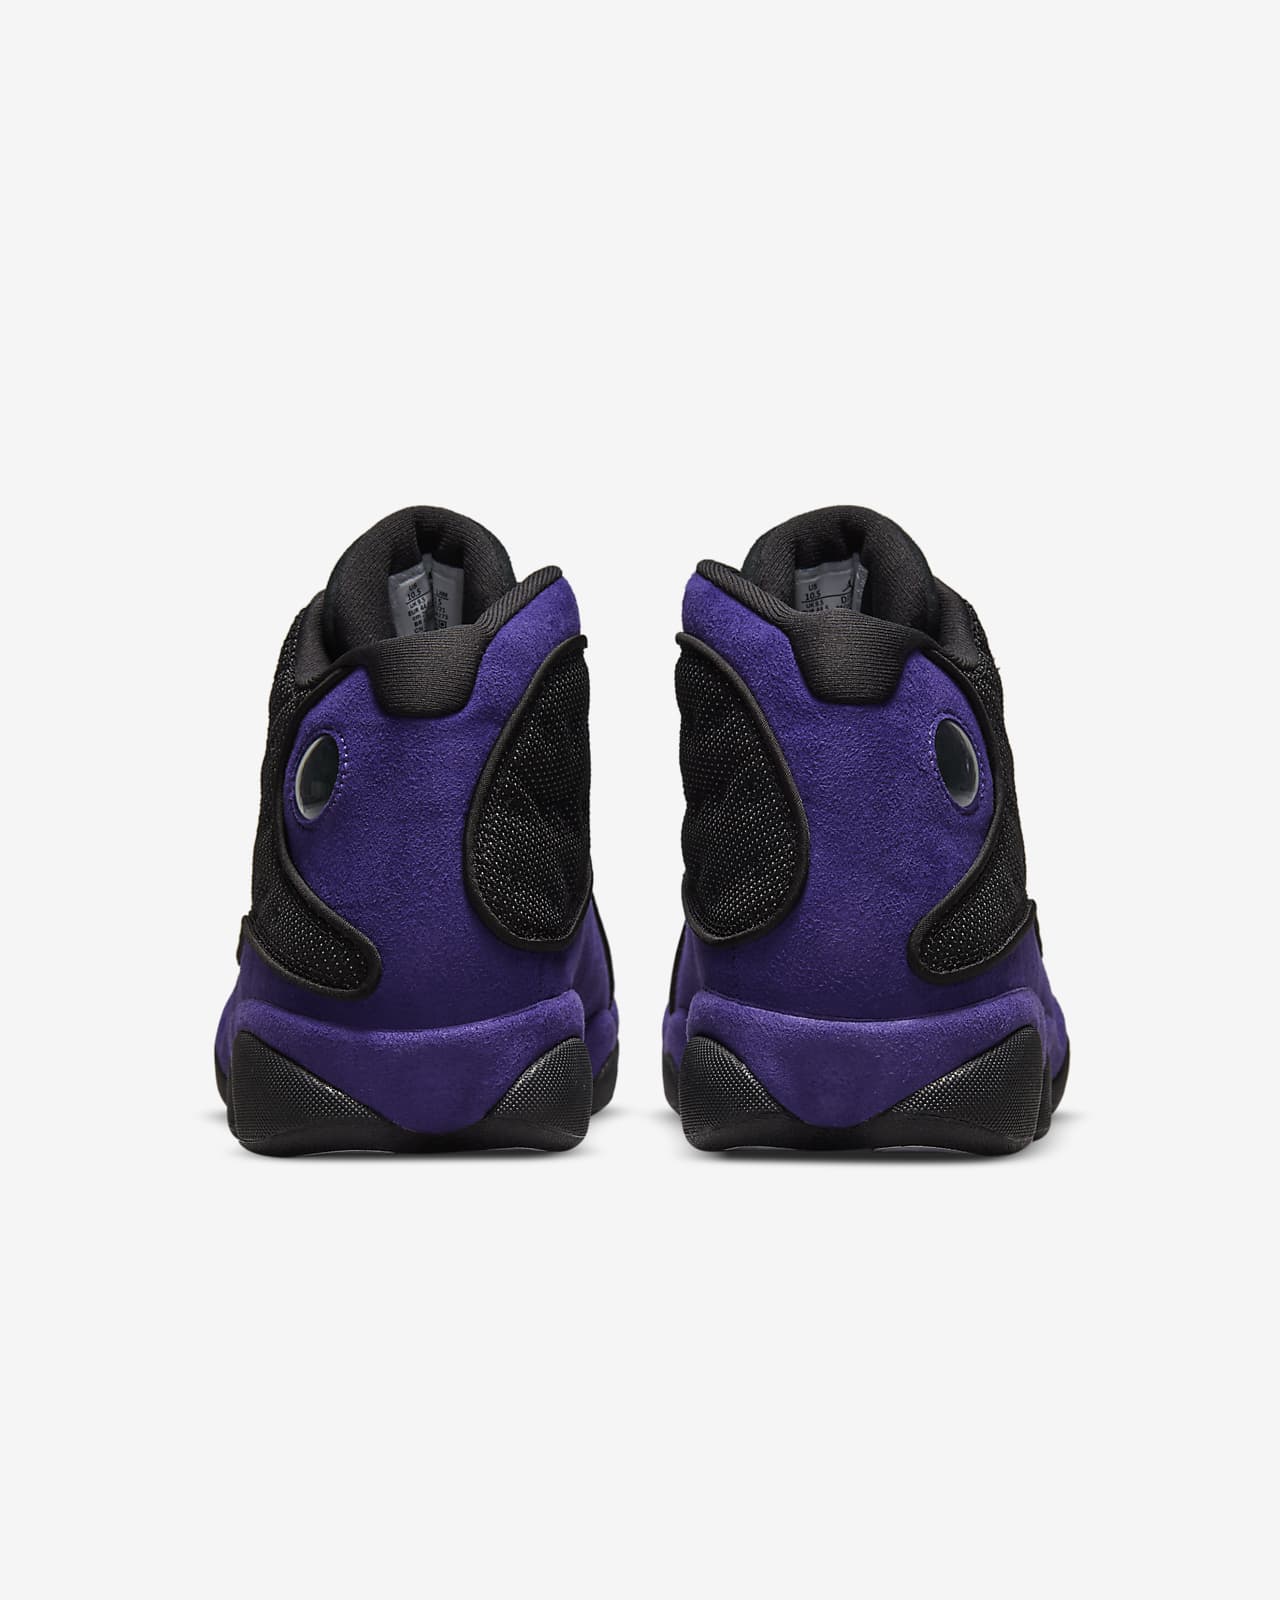 Air Jordan 13 Retro Men'S Shoes. Nike Vn